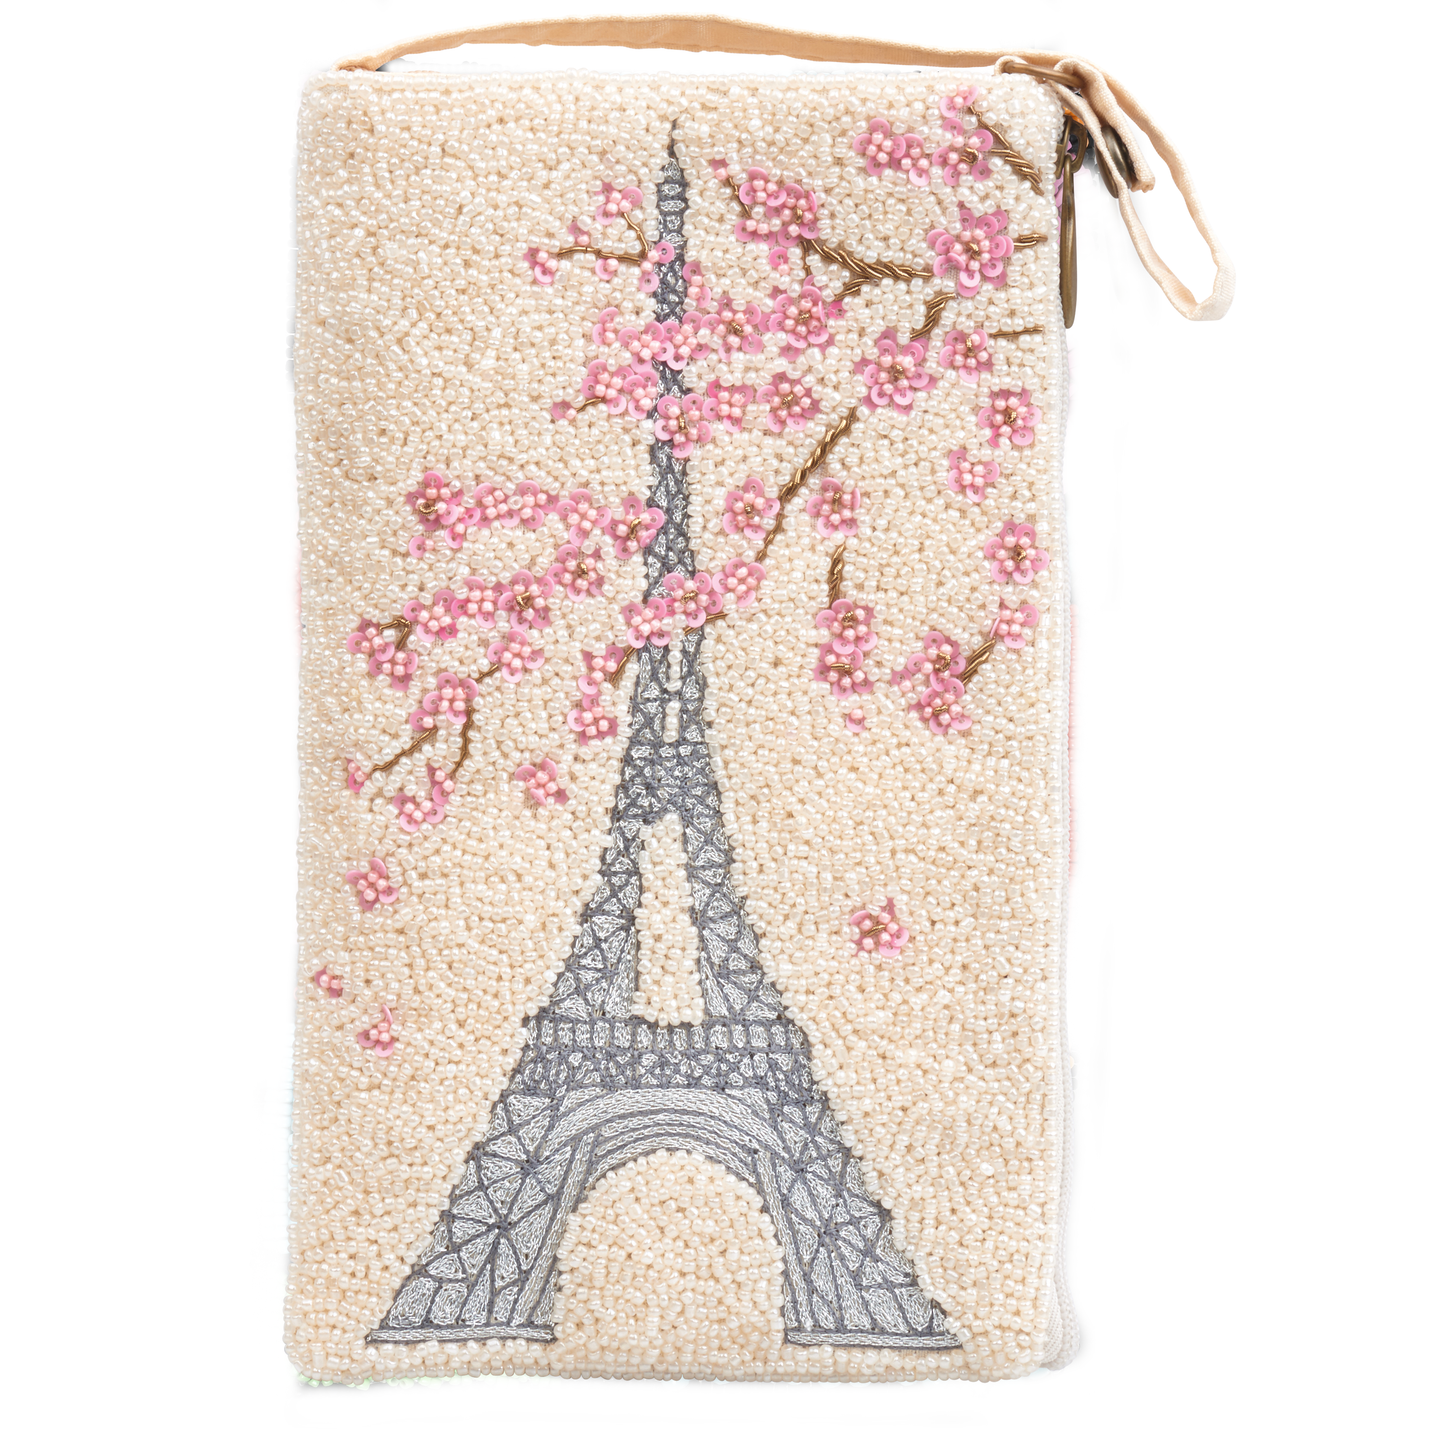 Paris Floral Club Bag